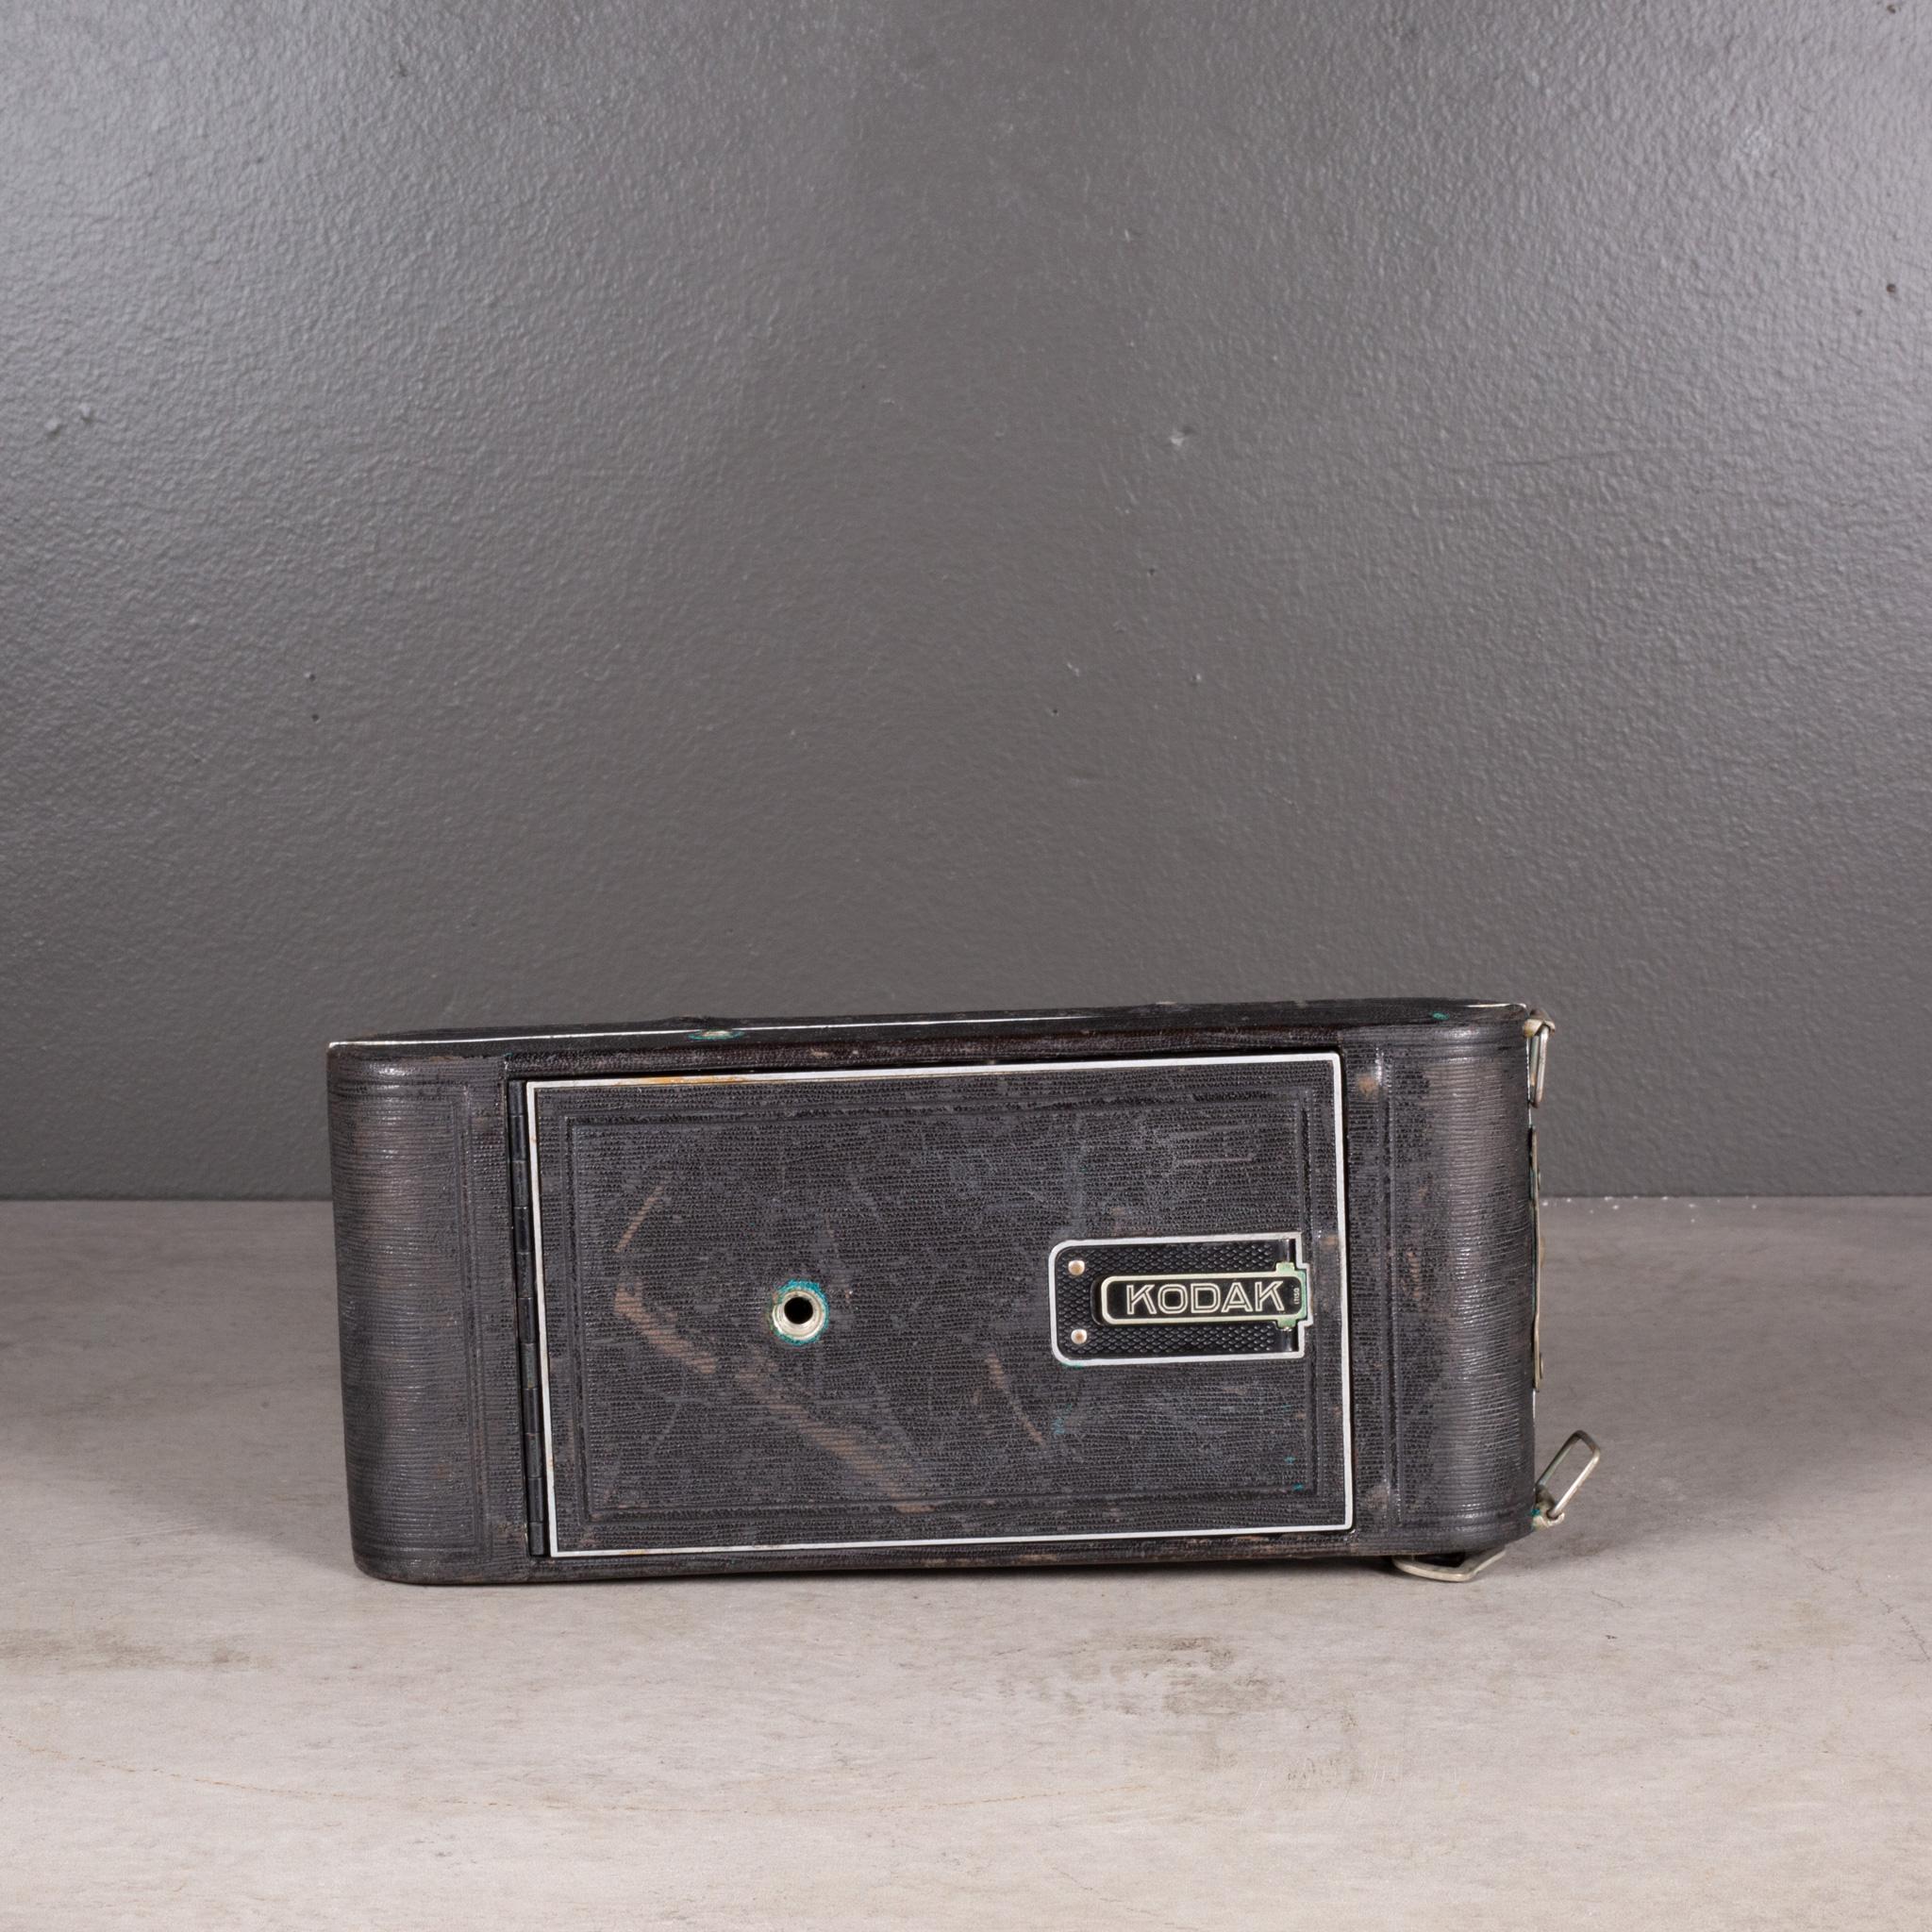 Métal Camera pliante Kodak spéciale modèle A en peau de requin vers 1915-1920 (expédition gratuite) en vente